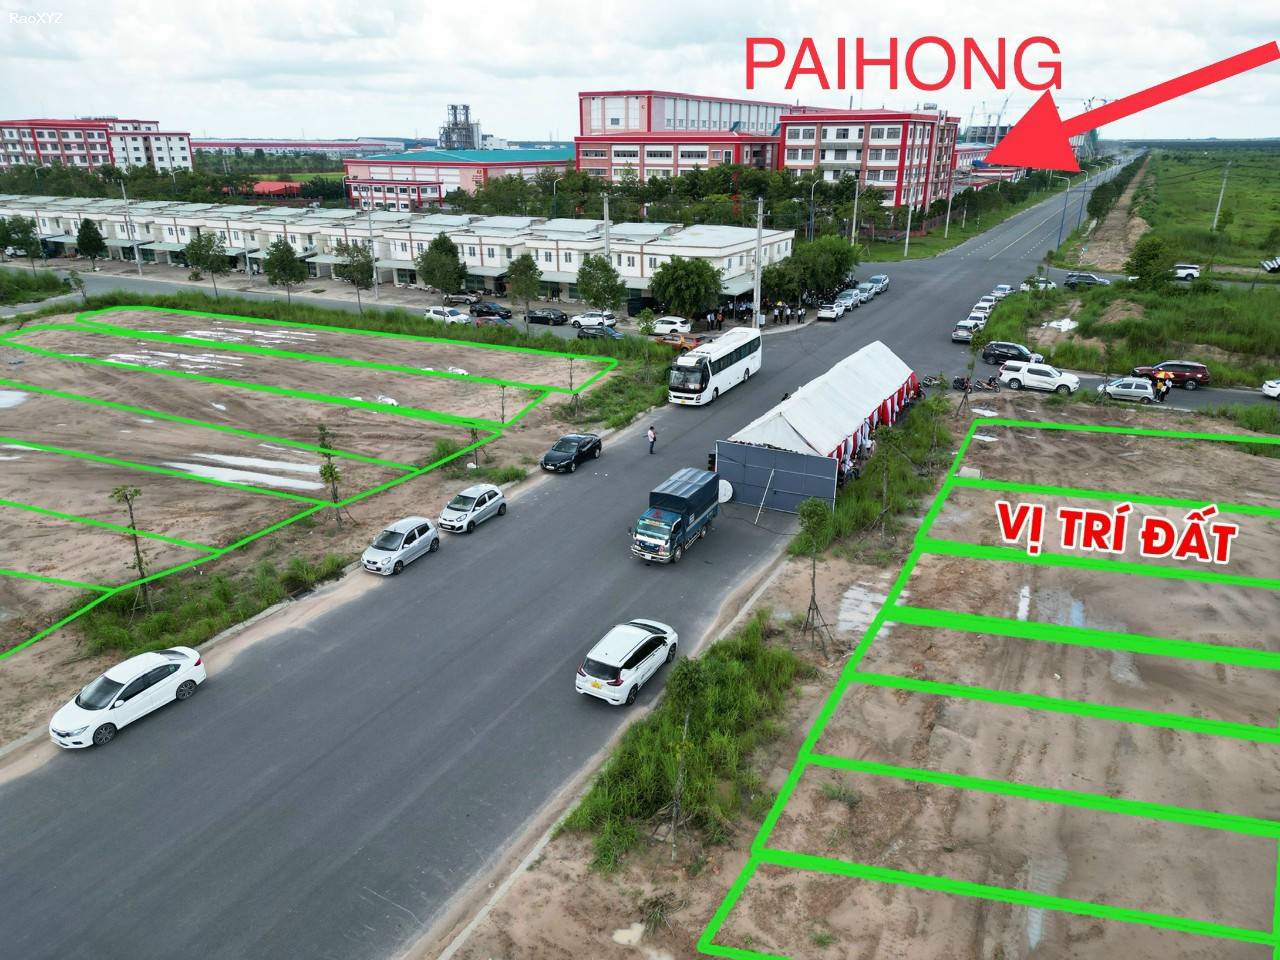 Đất nền đối diện côngty Paihong đang hoạt động giá 9,2tr/m2